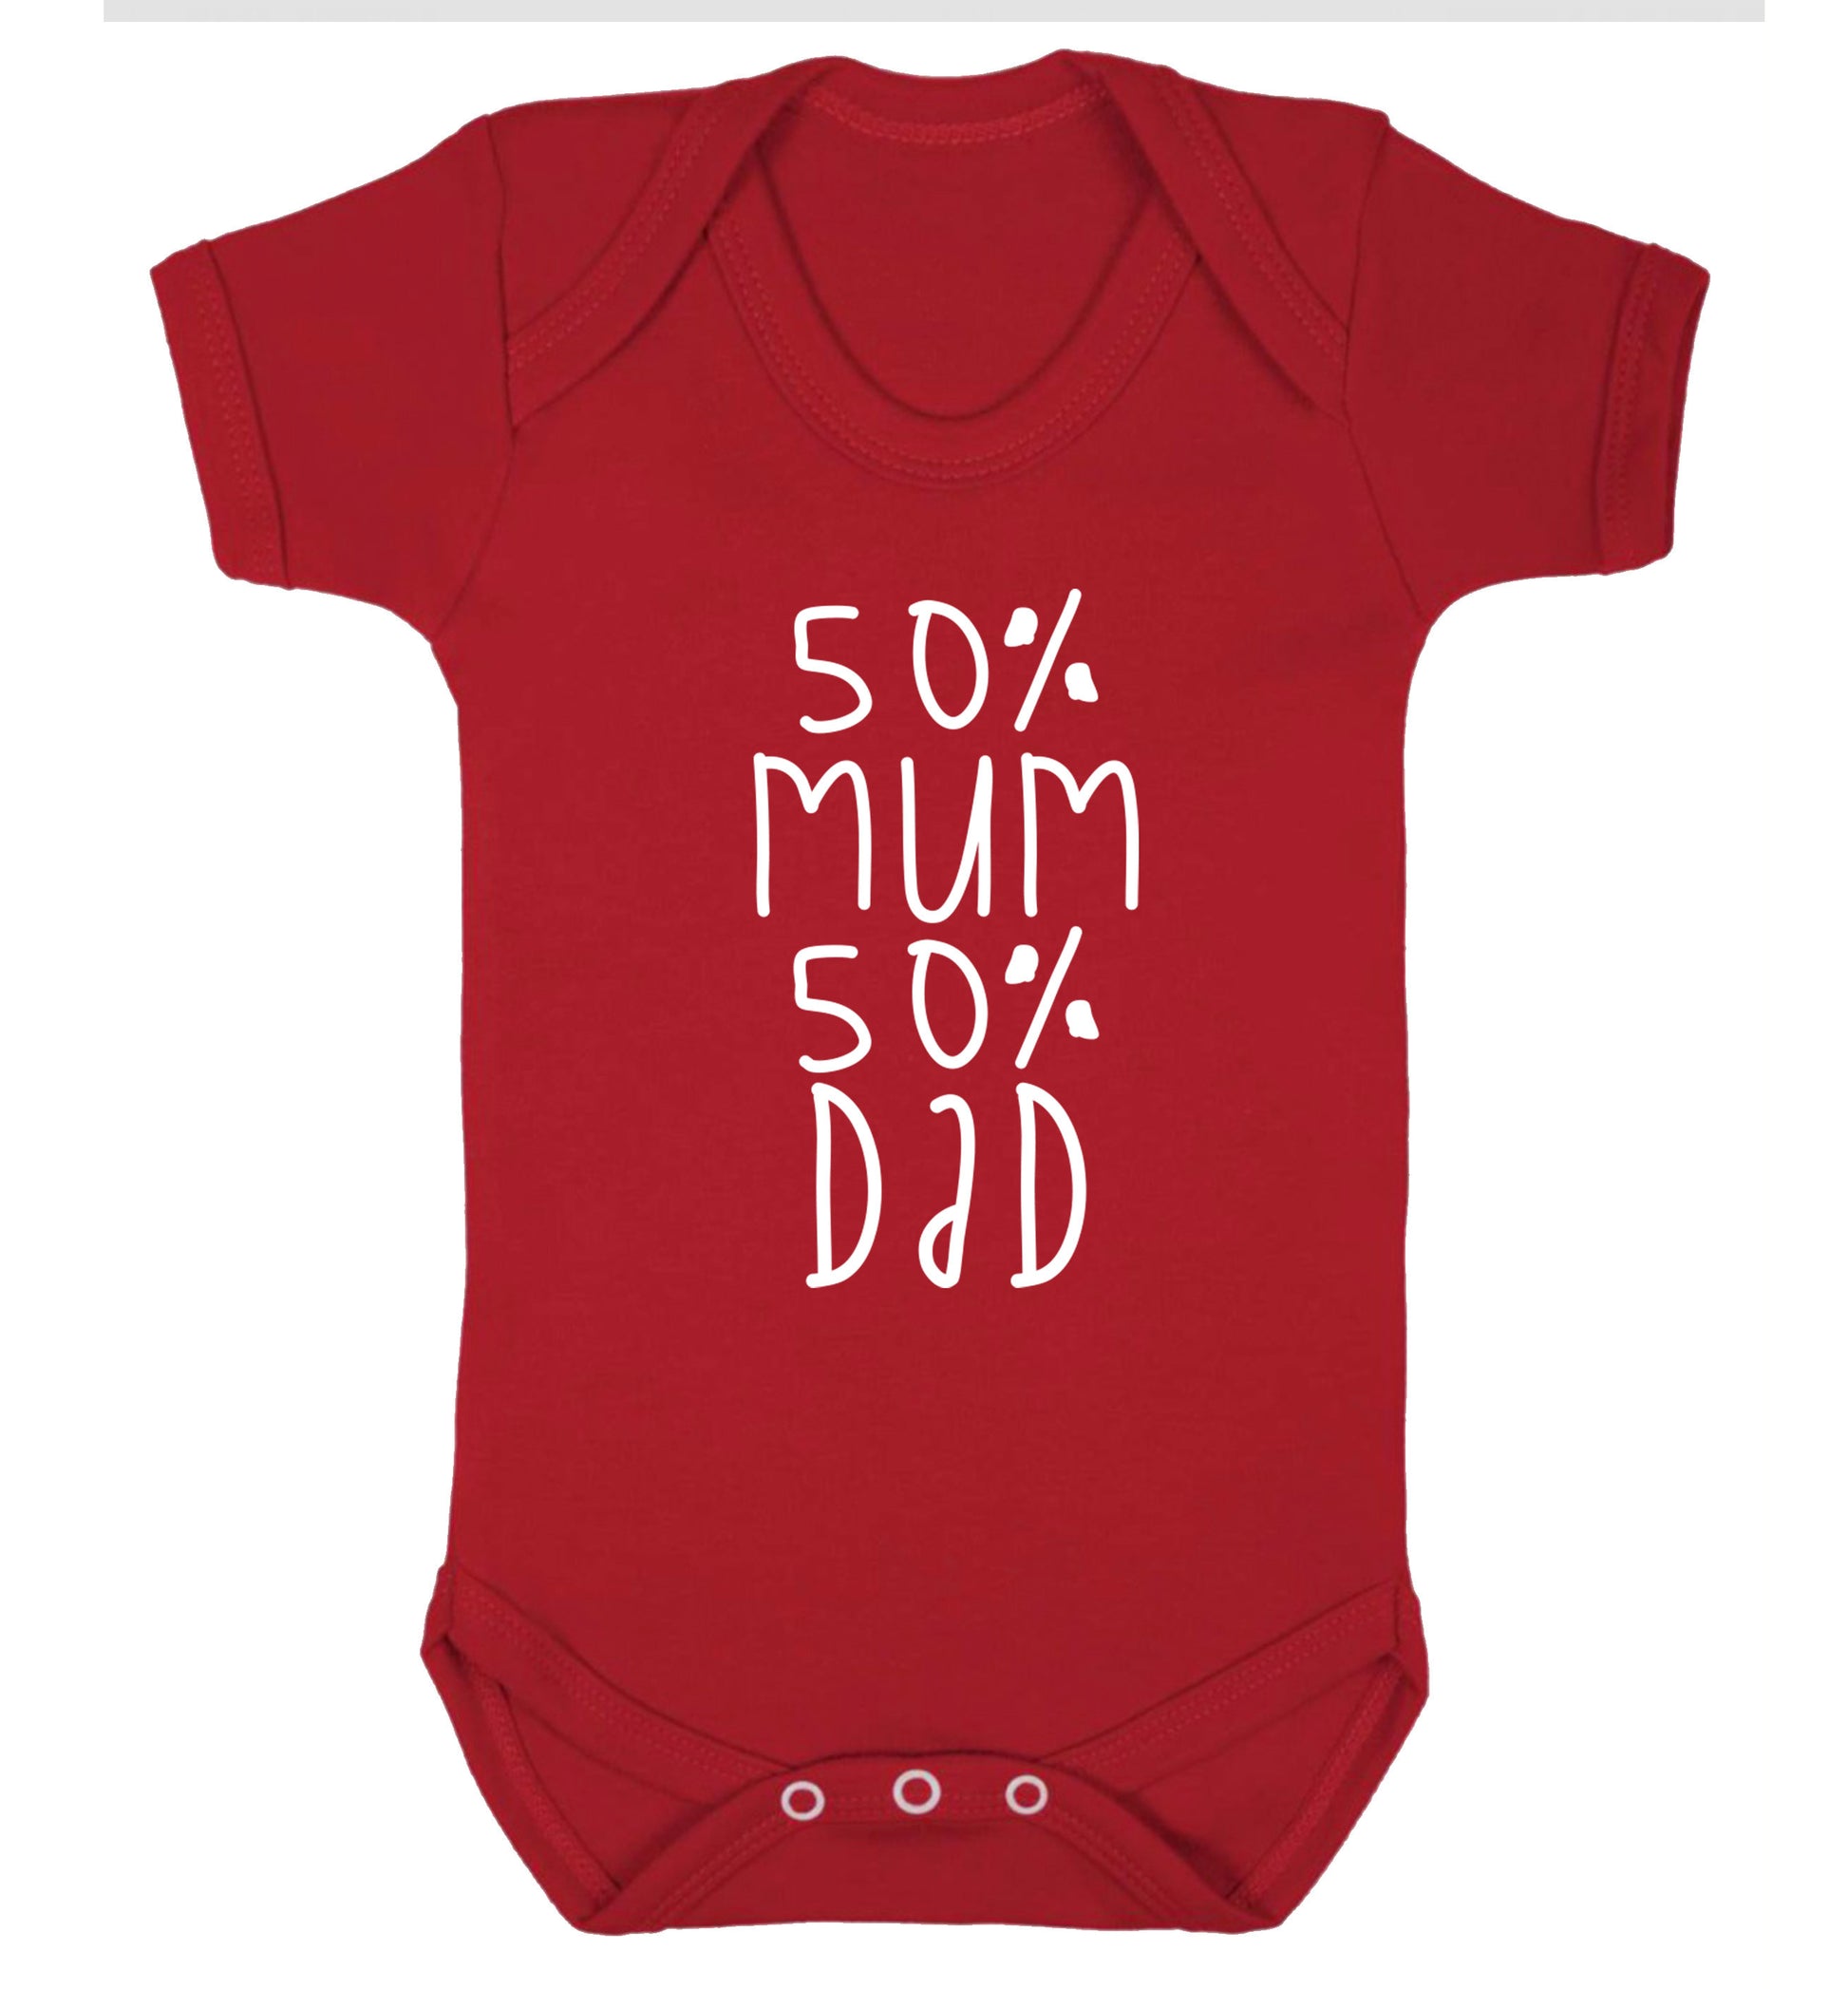 50% mum 50% dad Baby Vest red 18-24 months